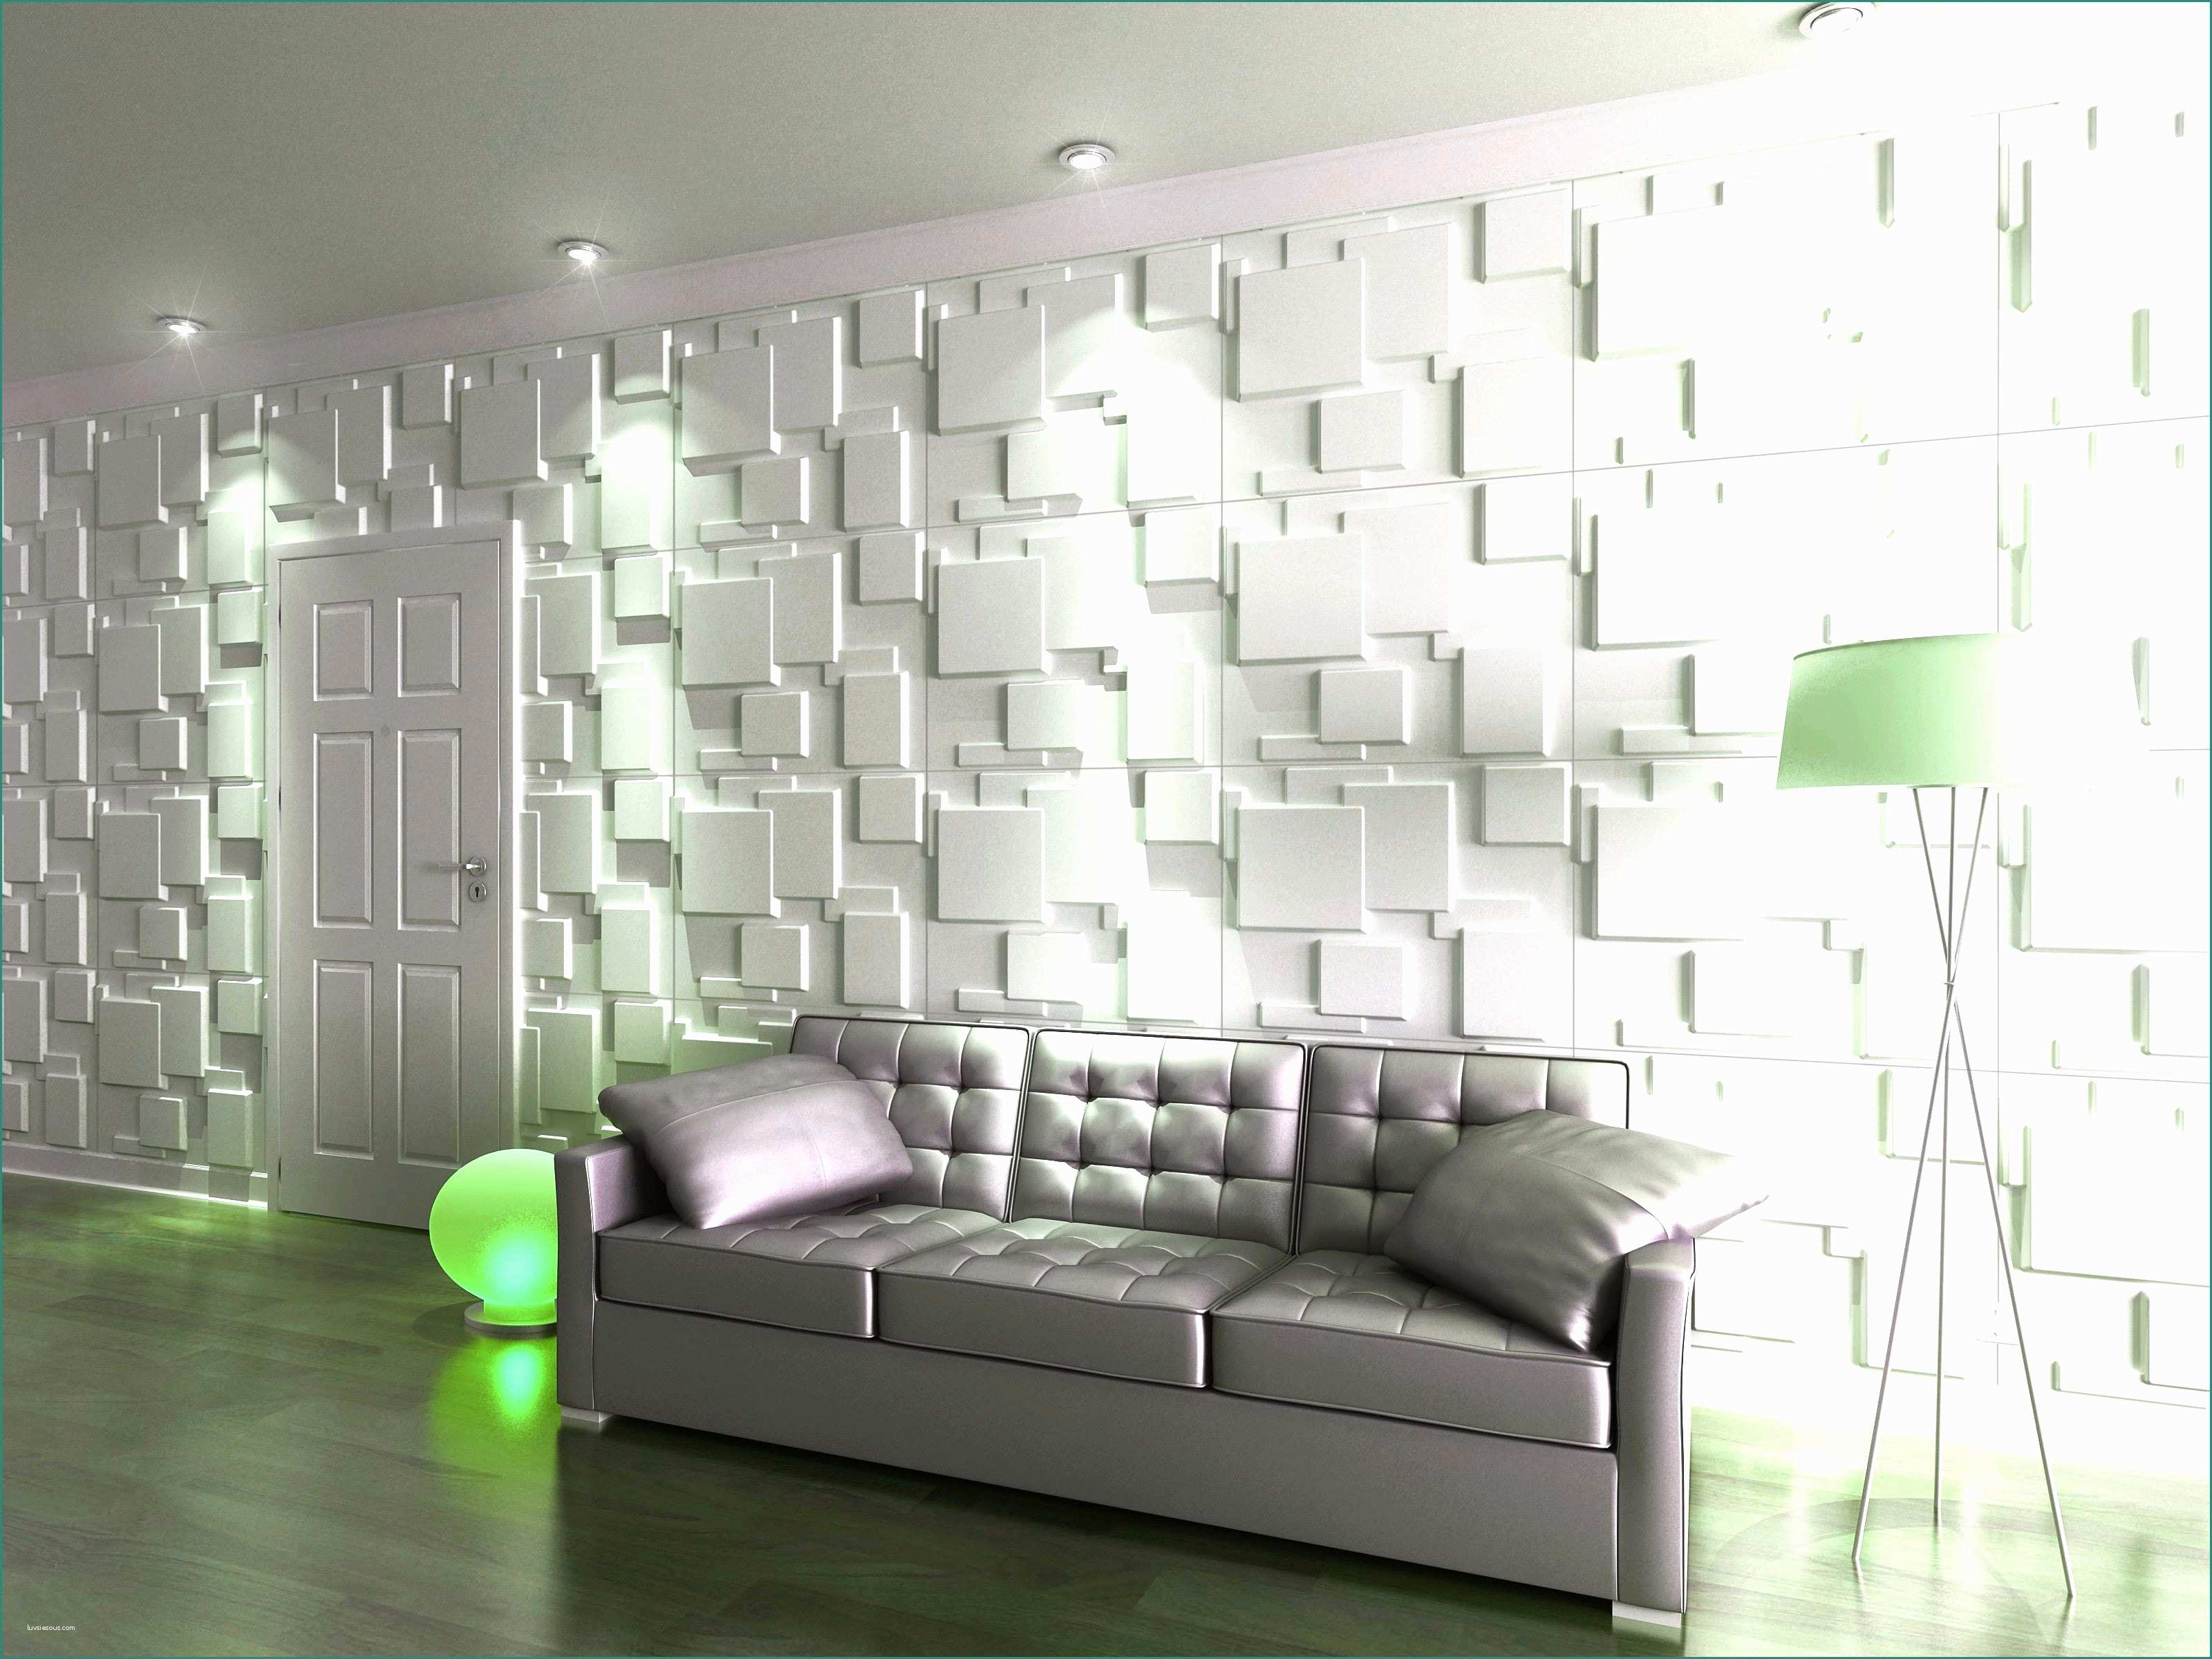 Lds pannelli decorativi e 100 pannelli decorativi per for Pannelli decorativi in polistirolo pareti interne